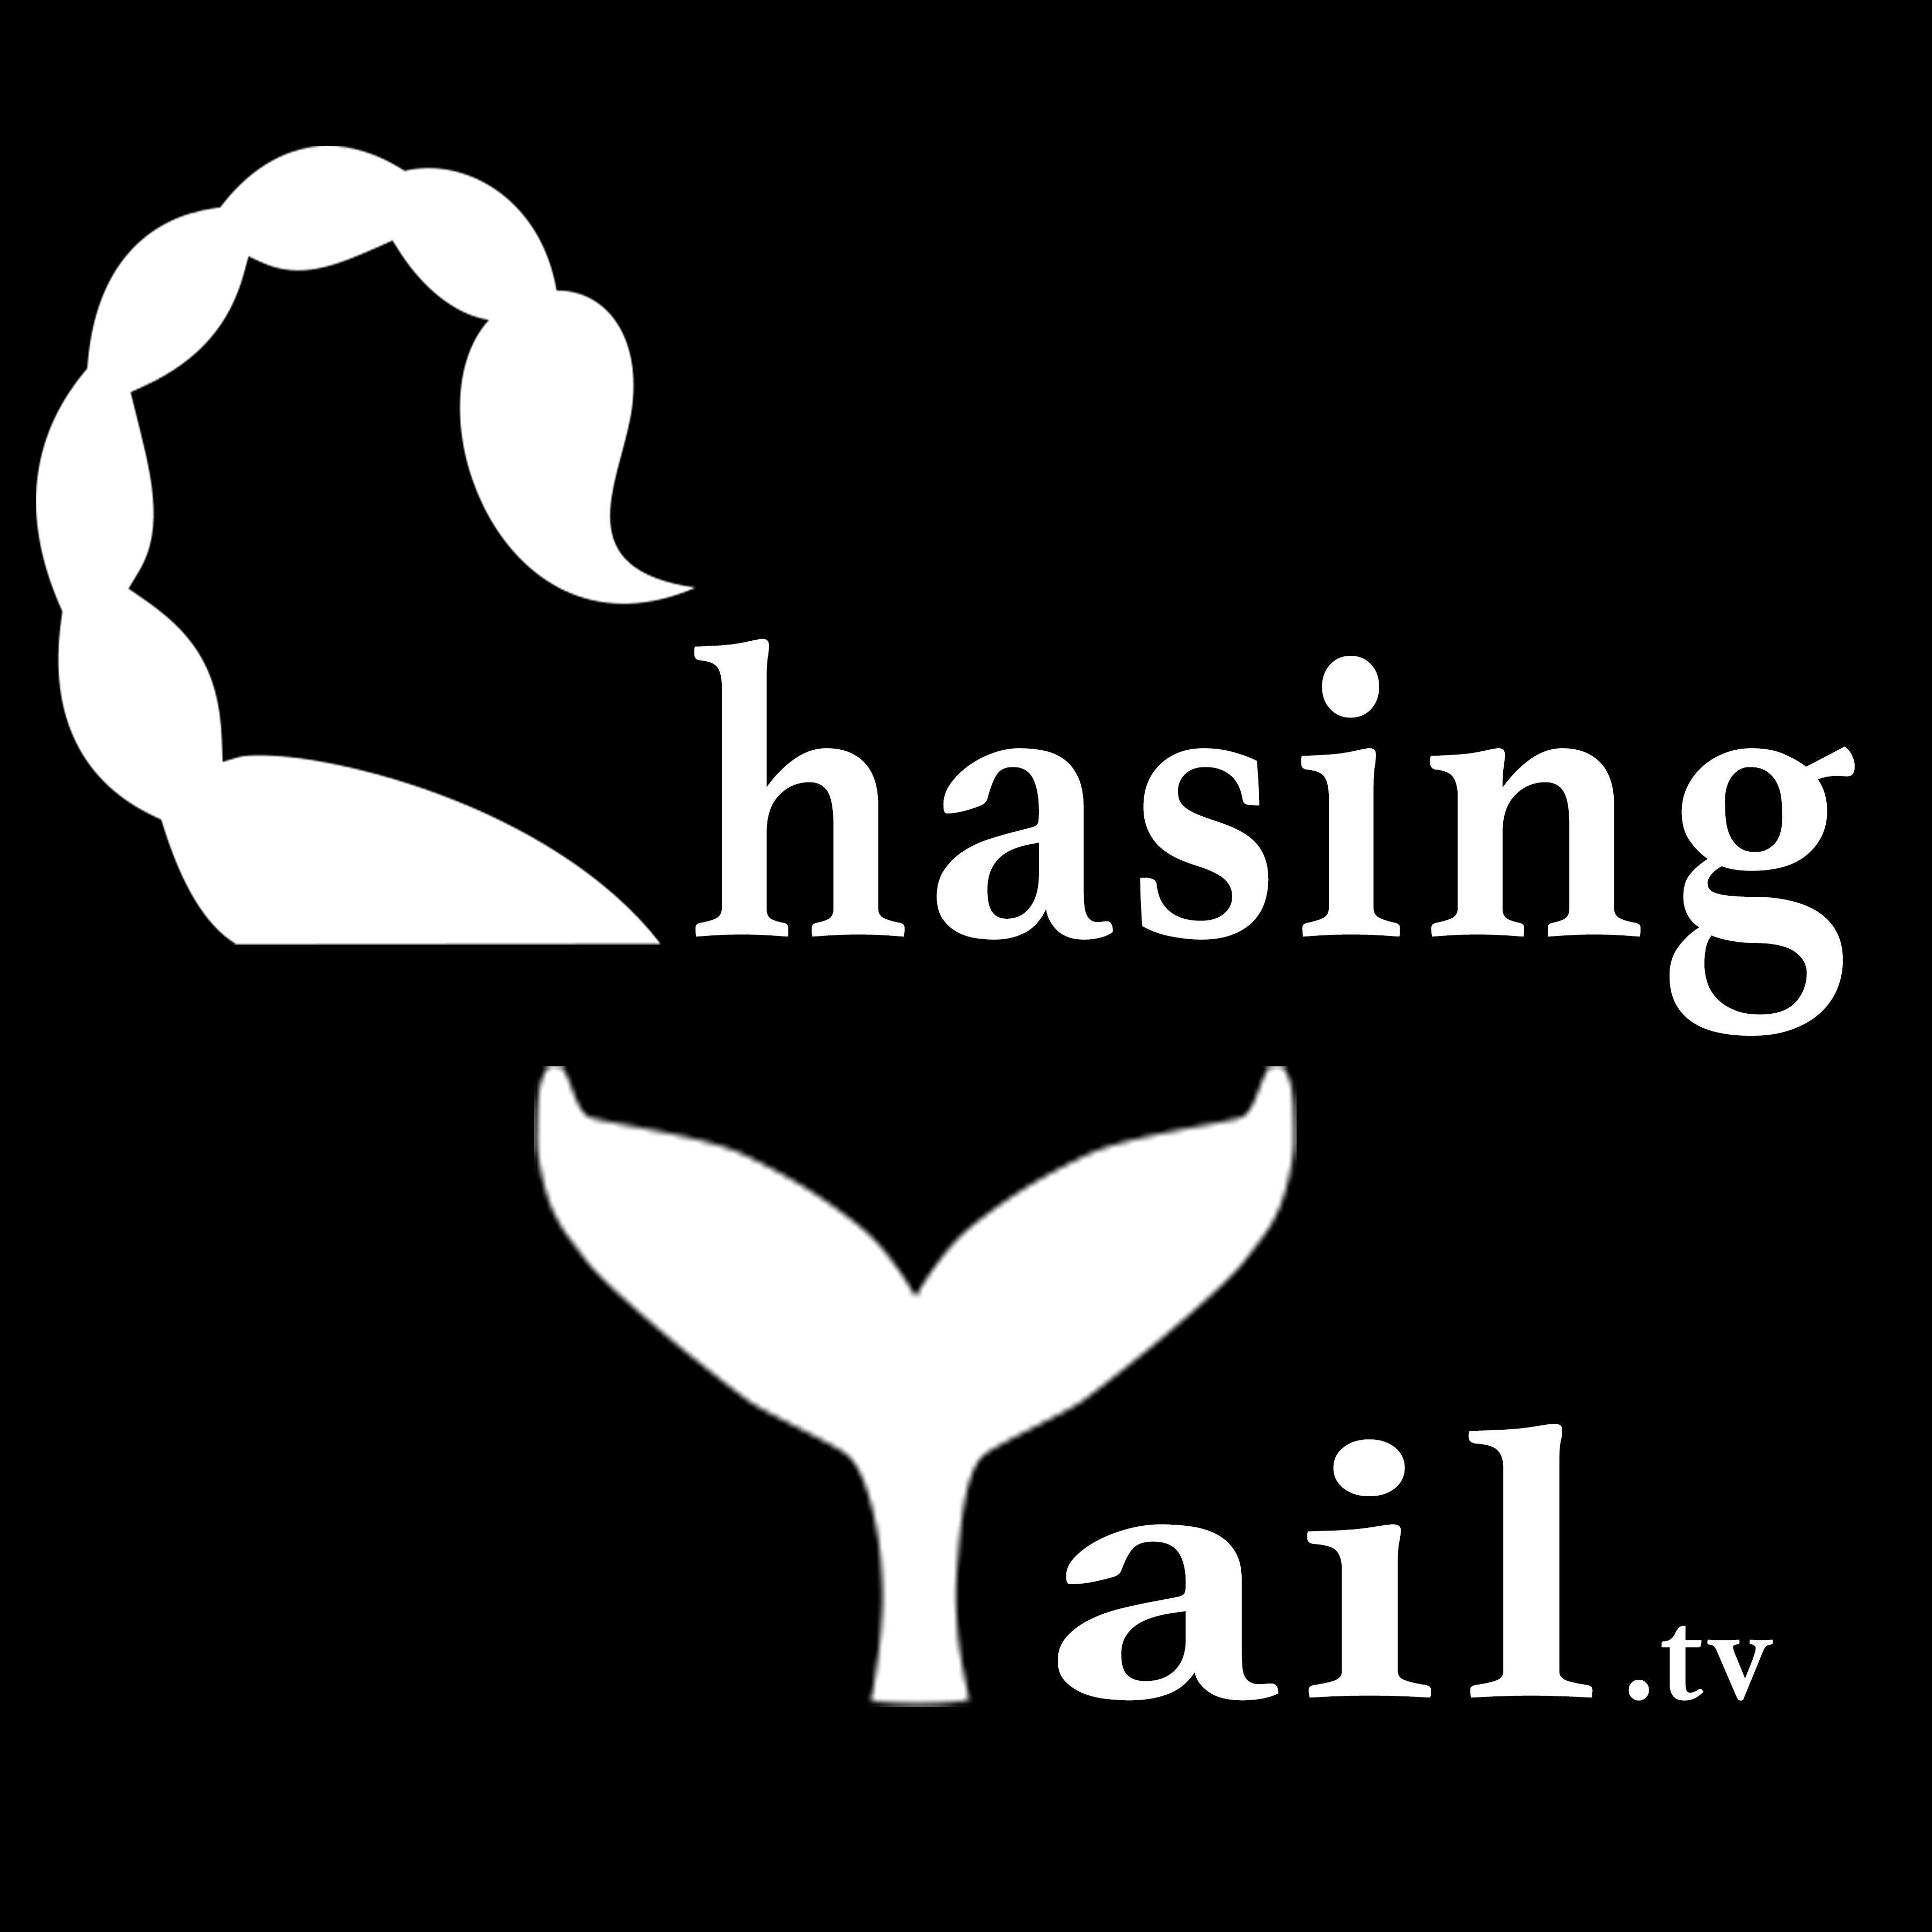 Chasing Logo - chasing tails square logo